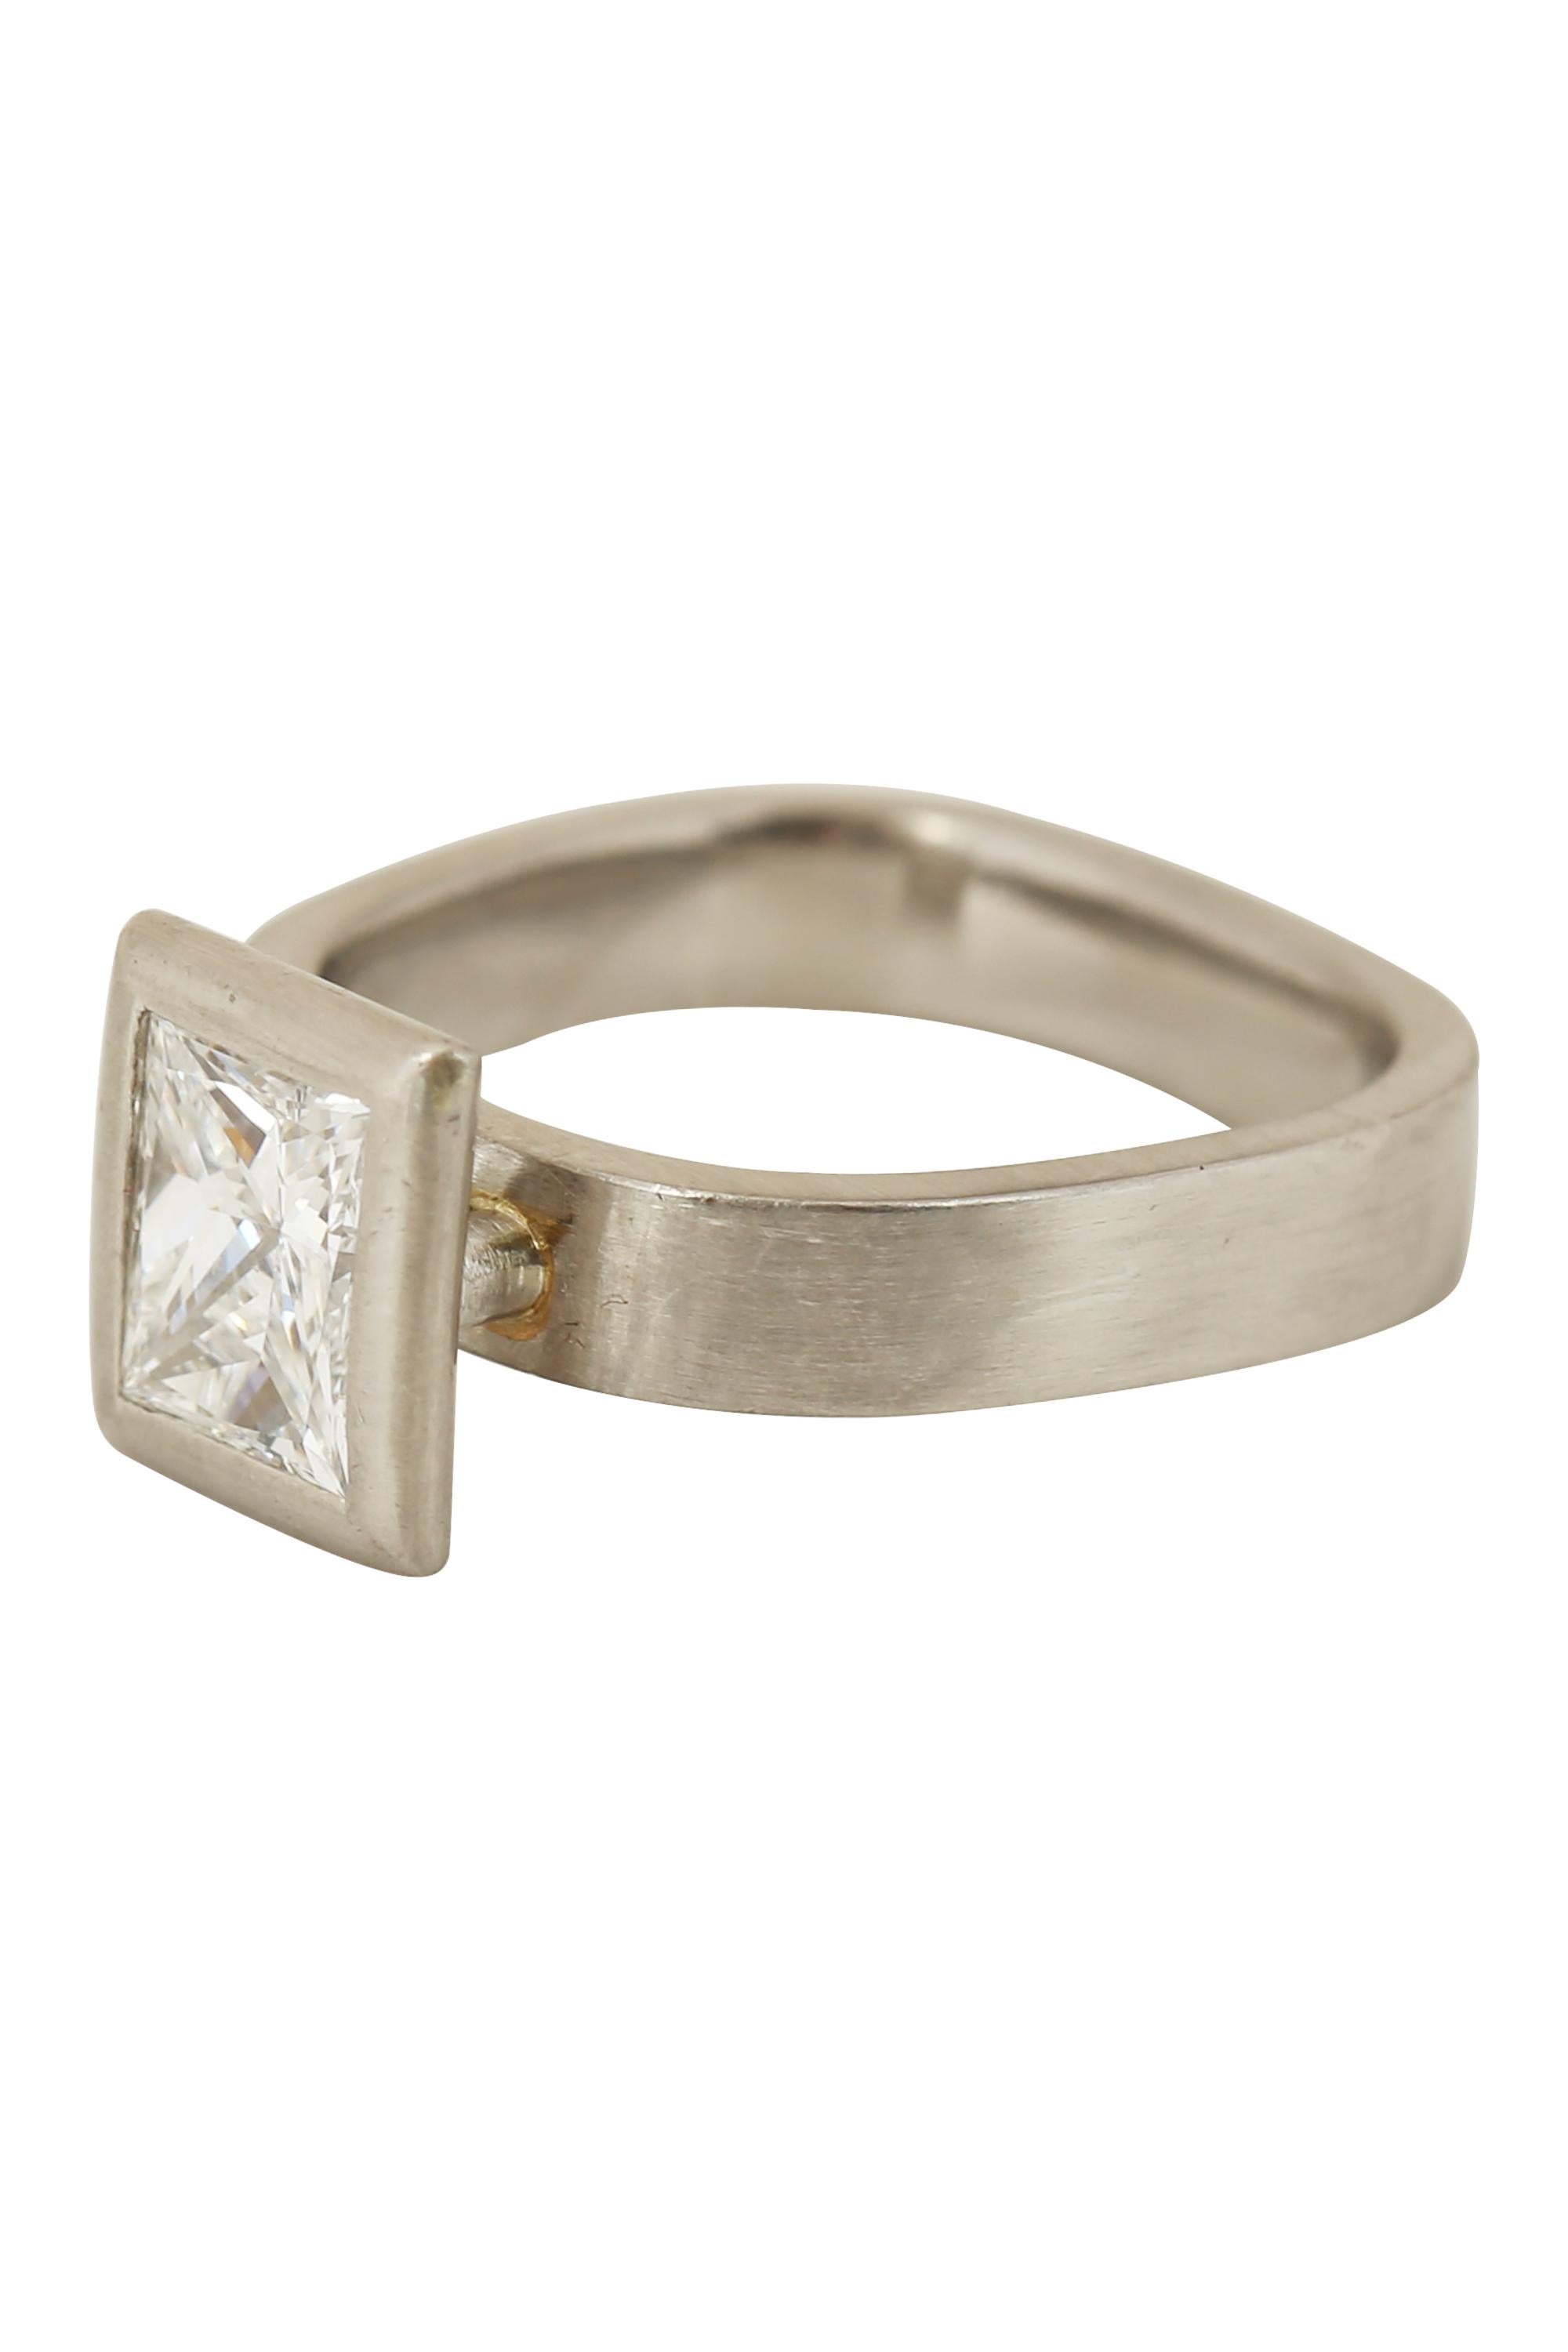 Ein Diamant im Prinzessschliff von 0,95 Karat mit der Farbe G und der Reinheit VS1 strahlt in einem modernen Rahmen aus gebürstetem Platin, der einen modernen geometrischen Ring umschließt. Derzeit Größe 4. 

